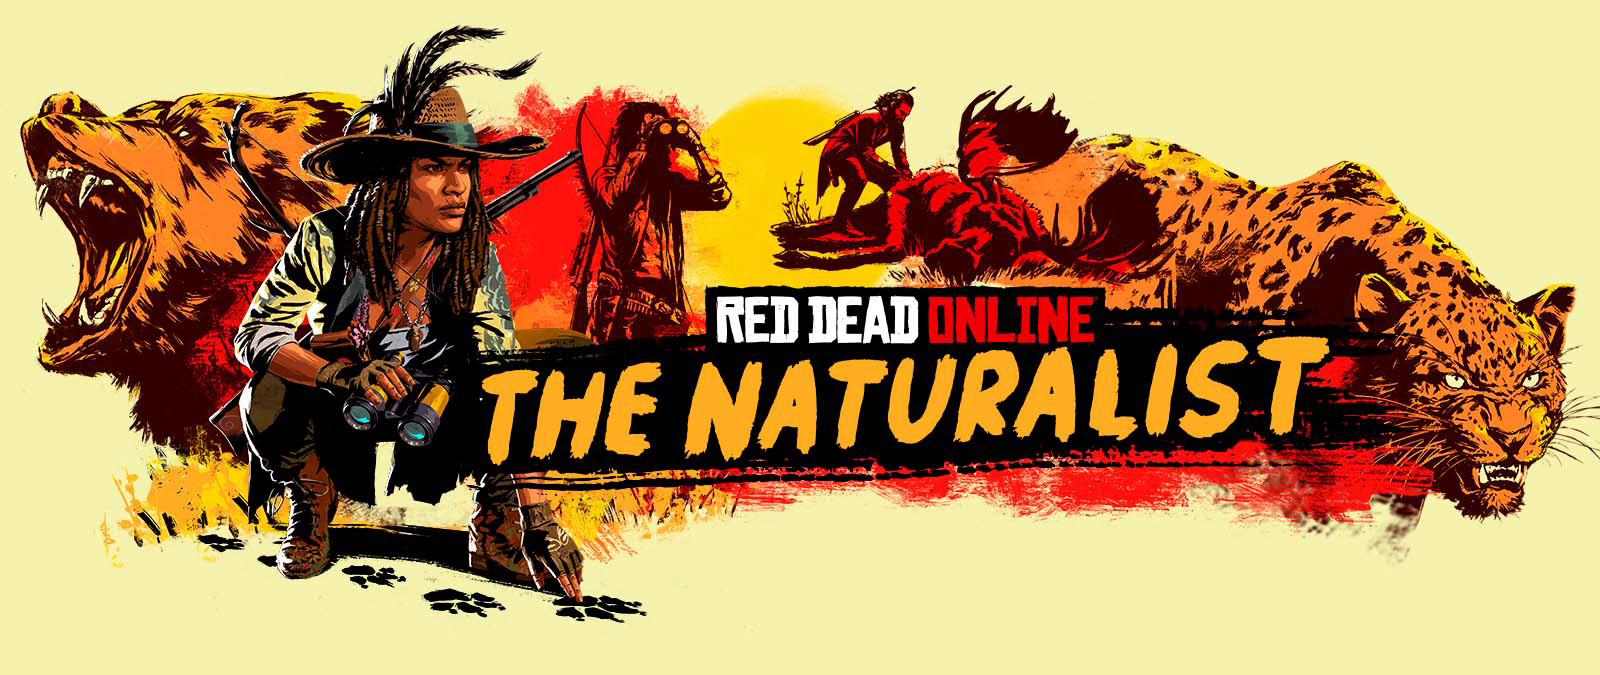 Red Dead Online. Naturalist. Hahmoja jäljittämässä ja metsästämässä suuria eläimiä.